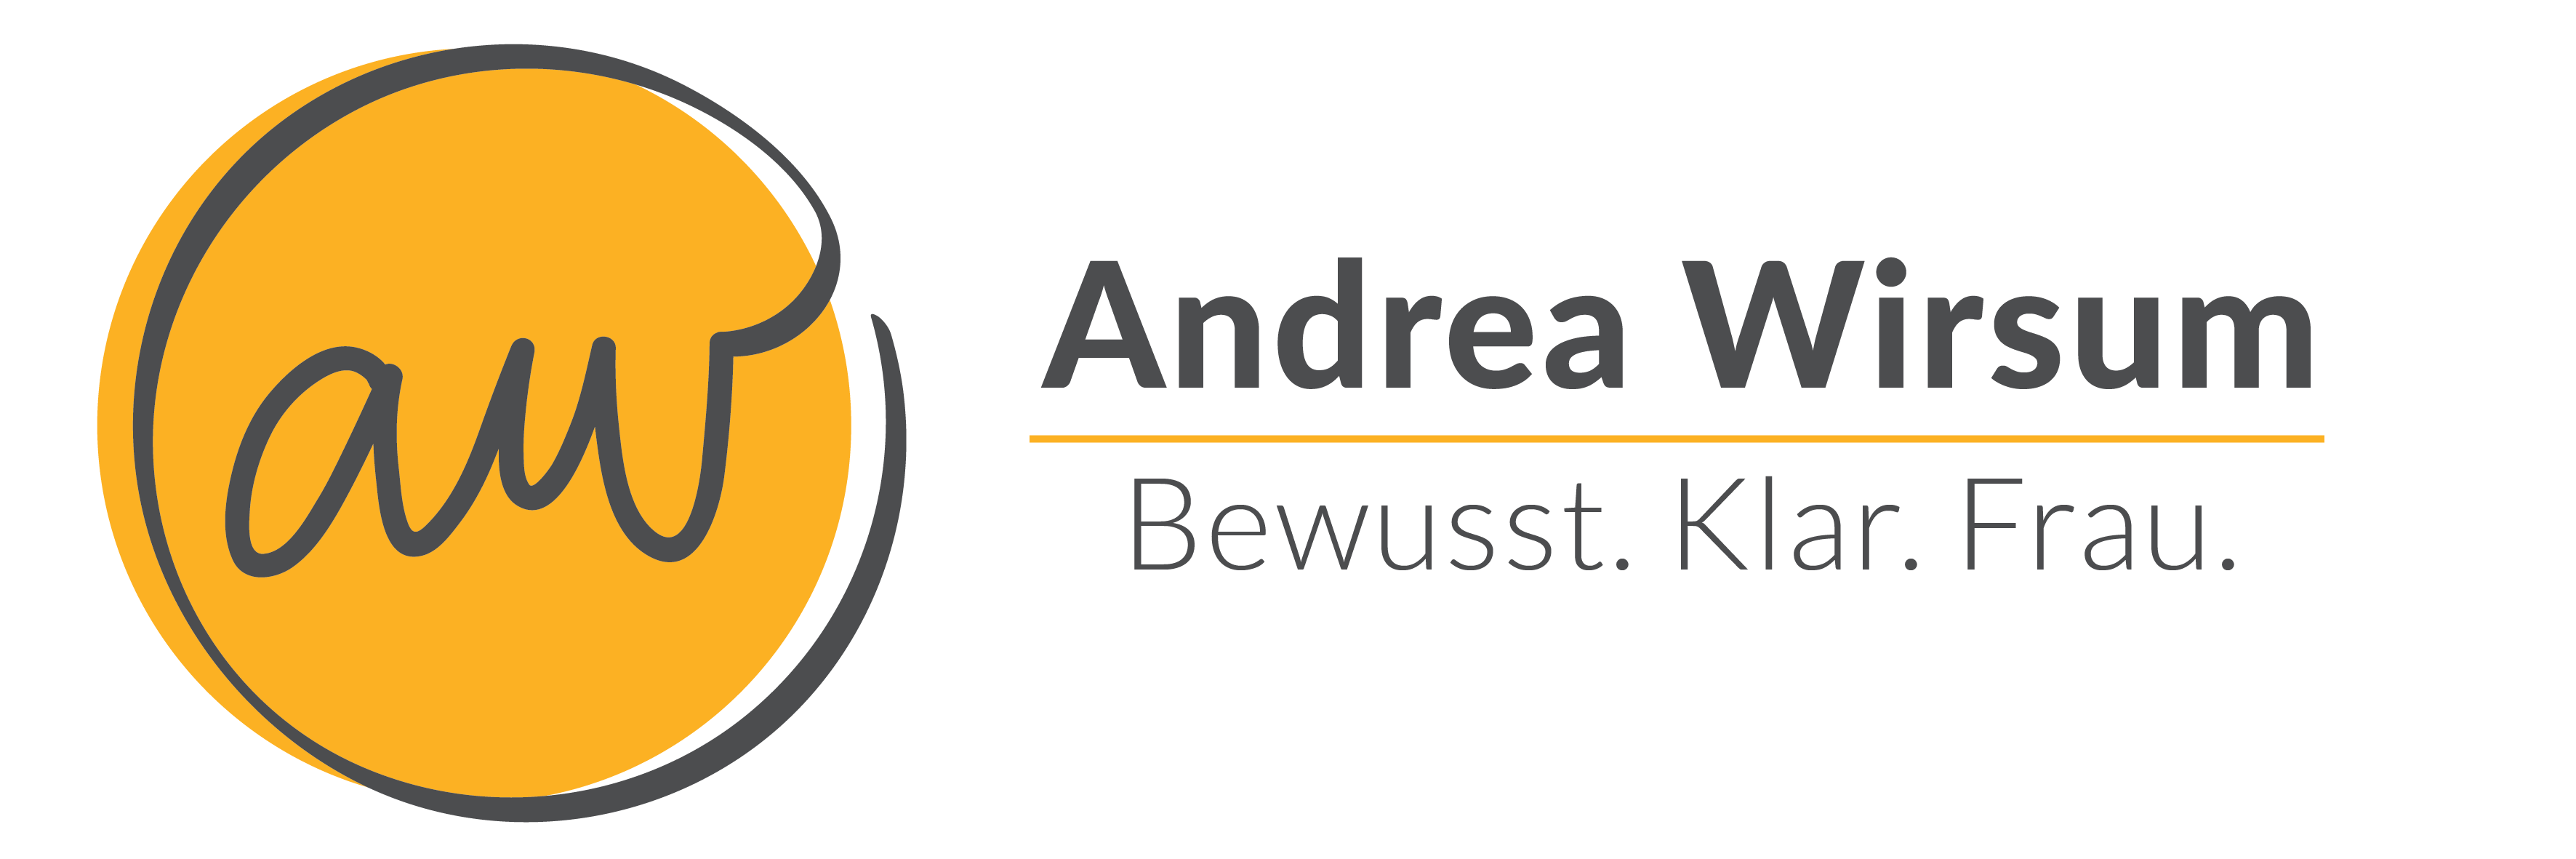 Andrea Wirsum